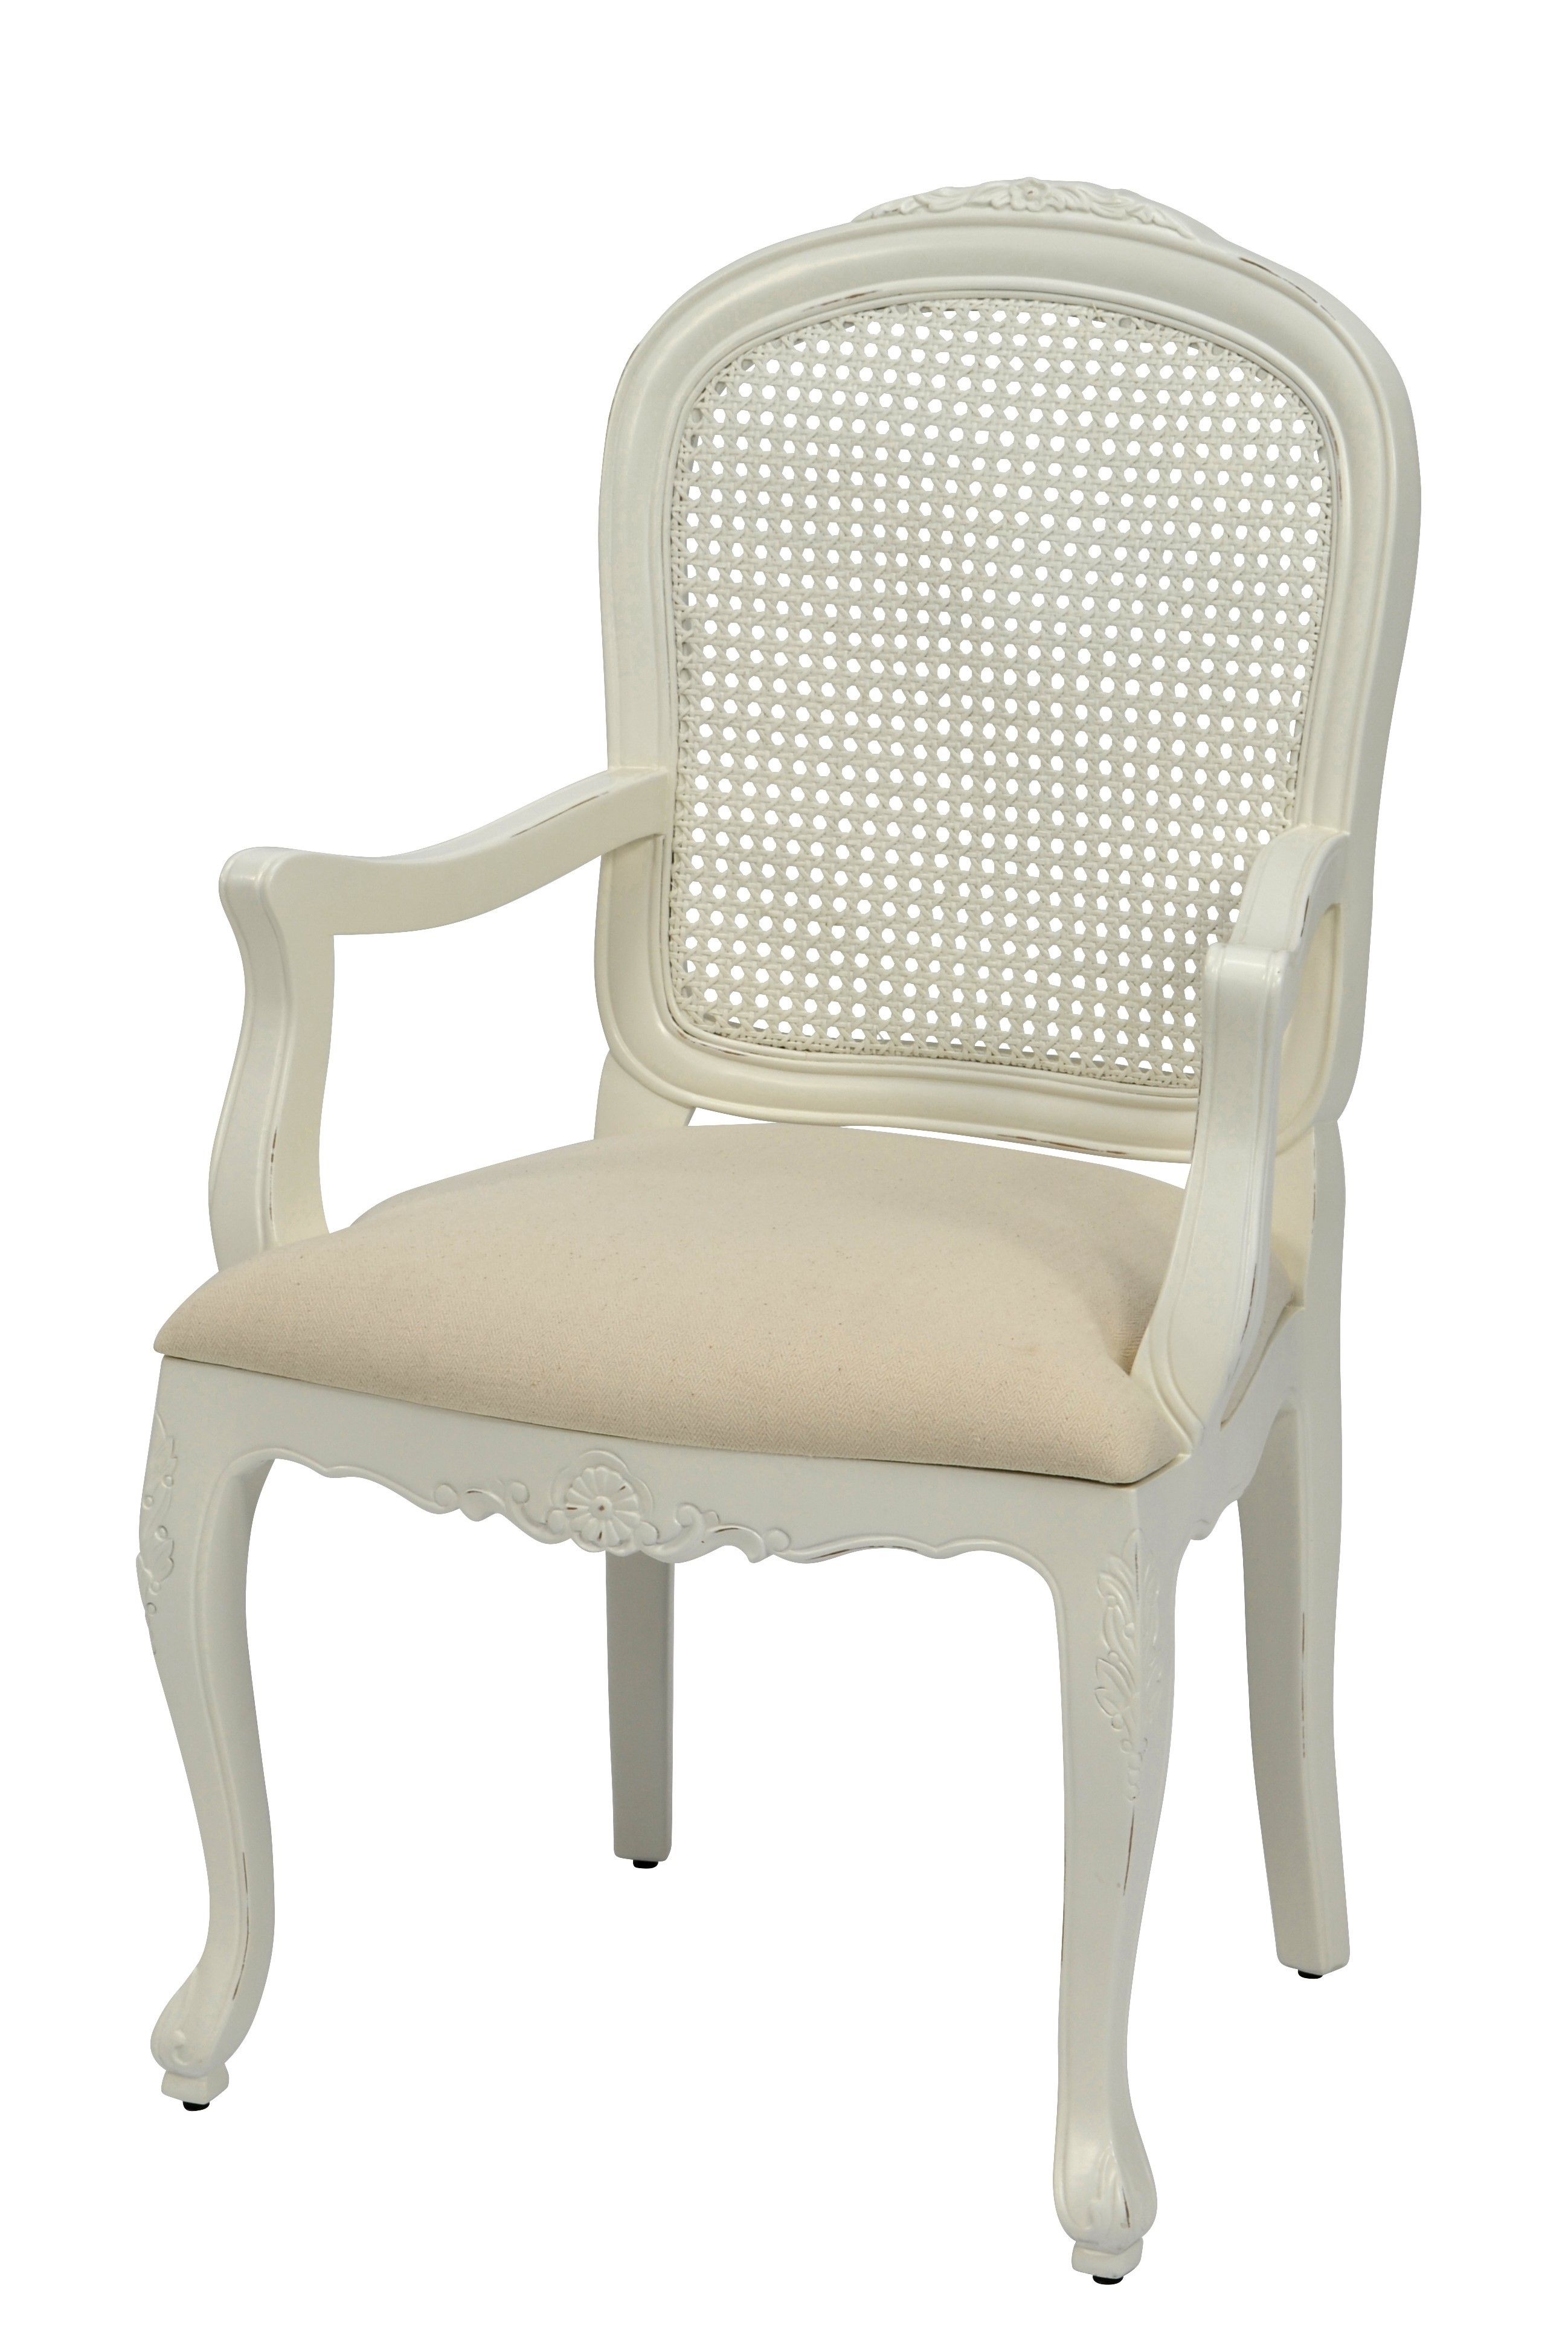 Estila Provensálska masívna stolička Preciosa v smotanovo bielej farbe s krémovým čalúnením so zaoblenými opierkami a nožičkami 99cm